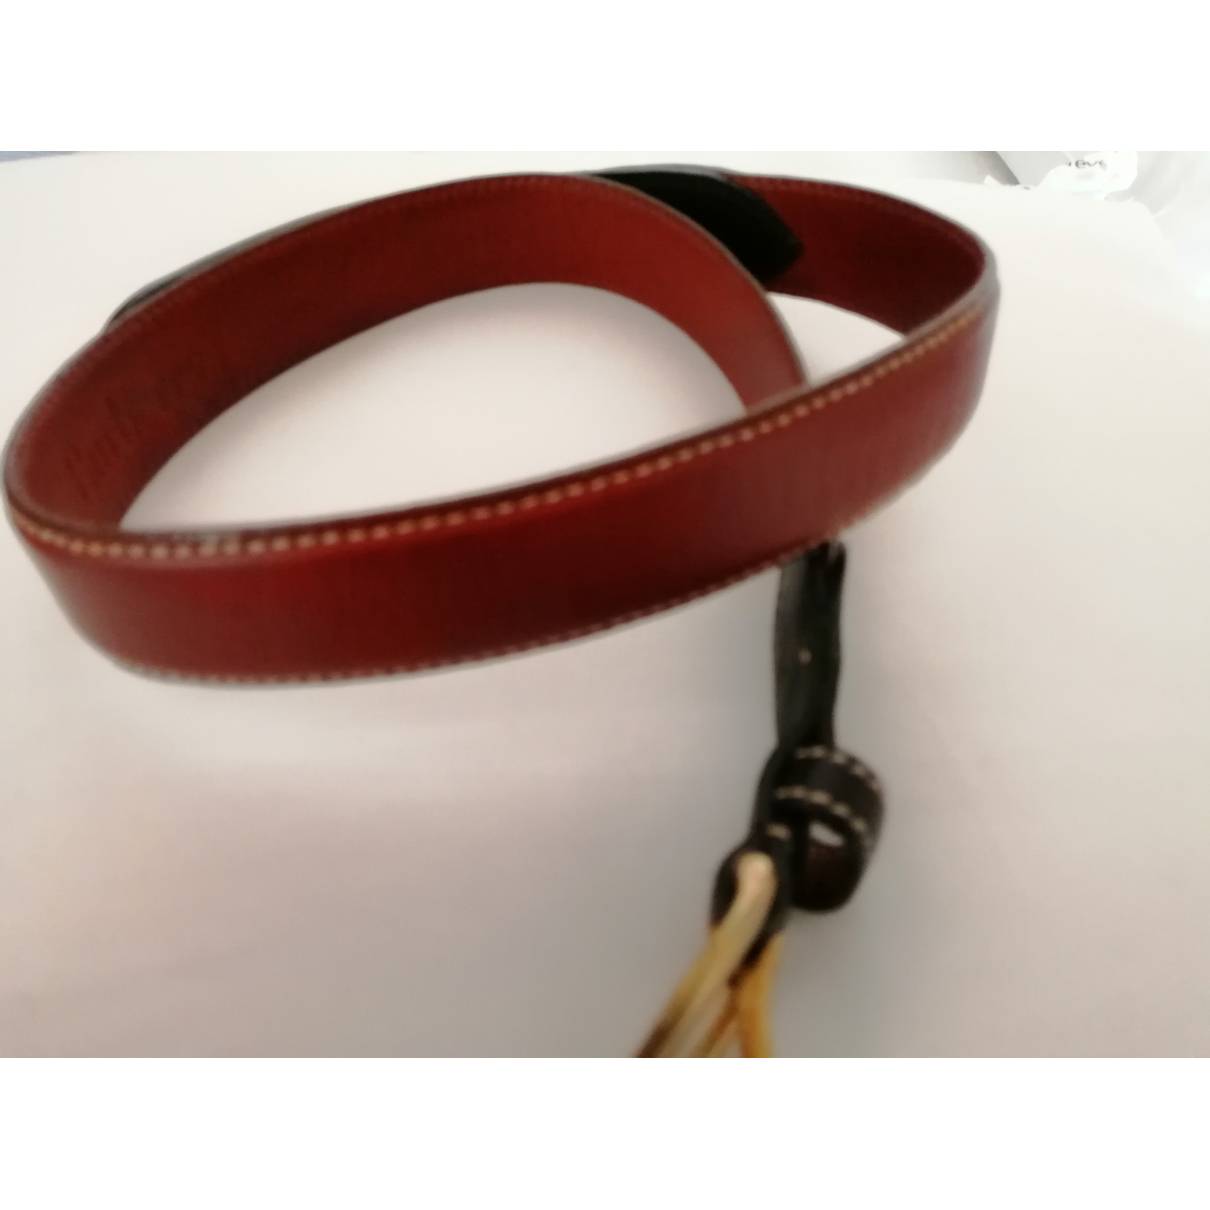 Buy Burberry Leather belt online - Vintage